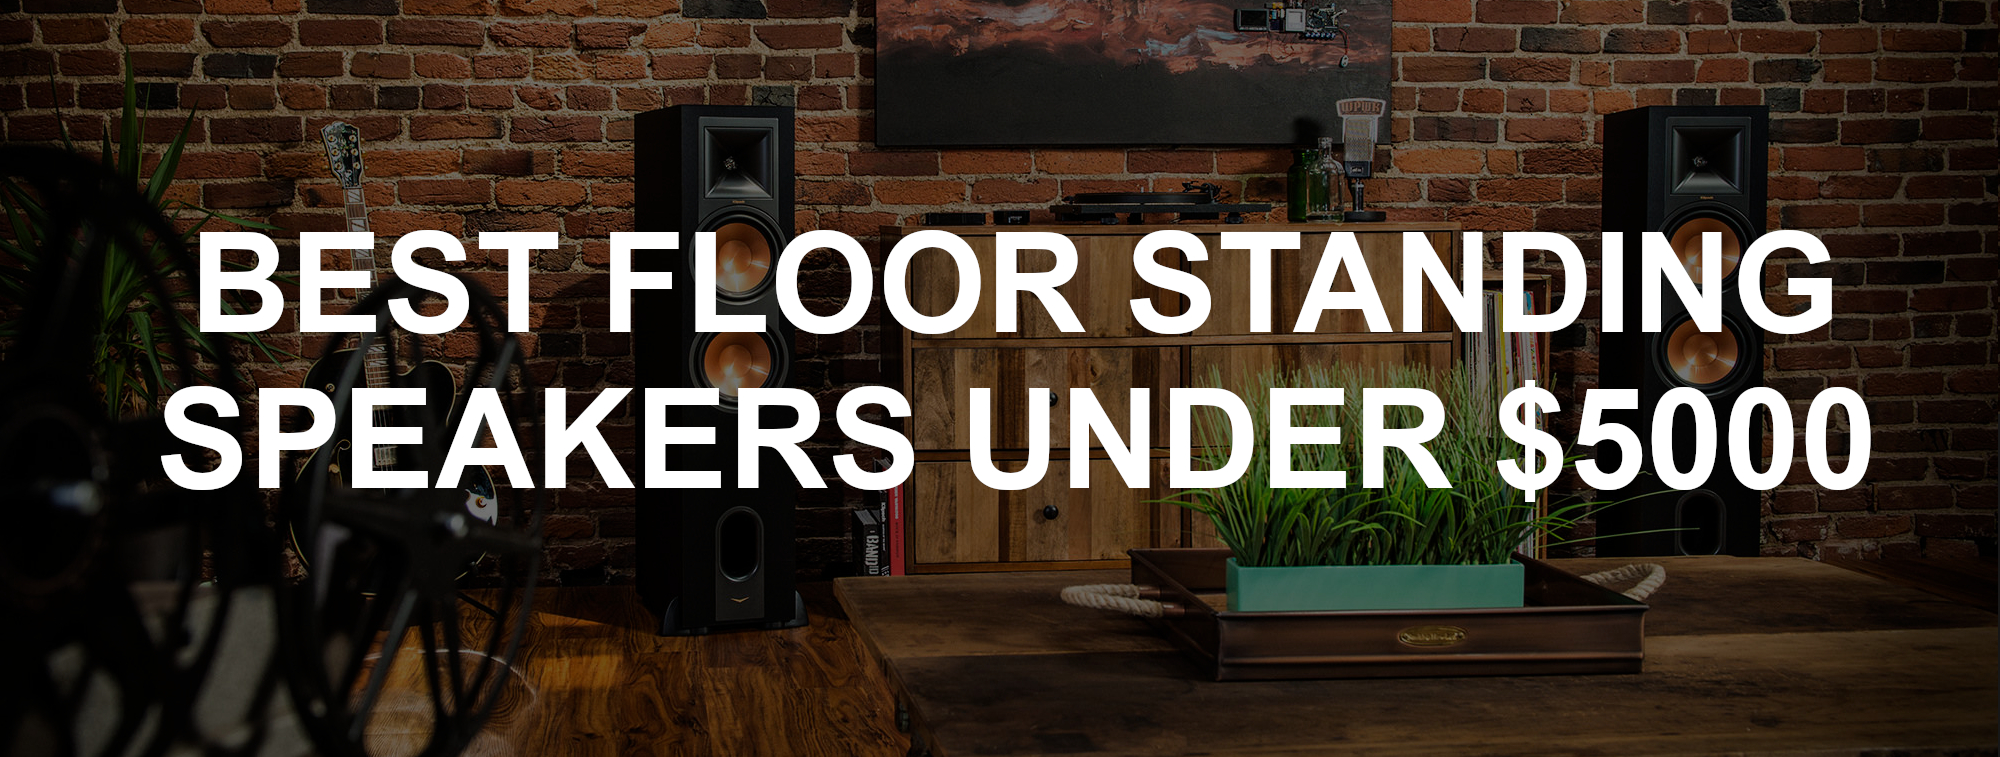 Best Floor Standing Speakers under $5000